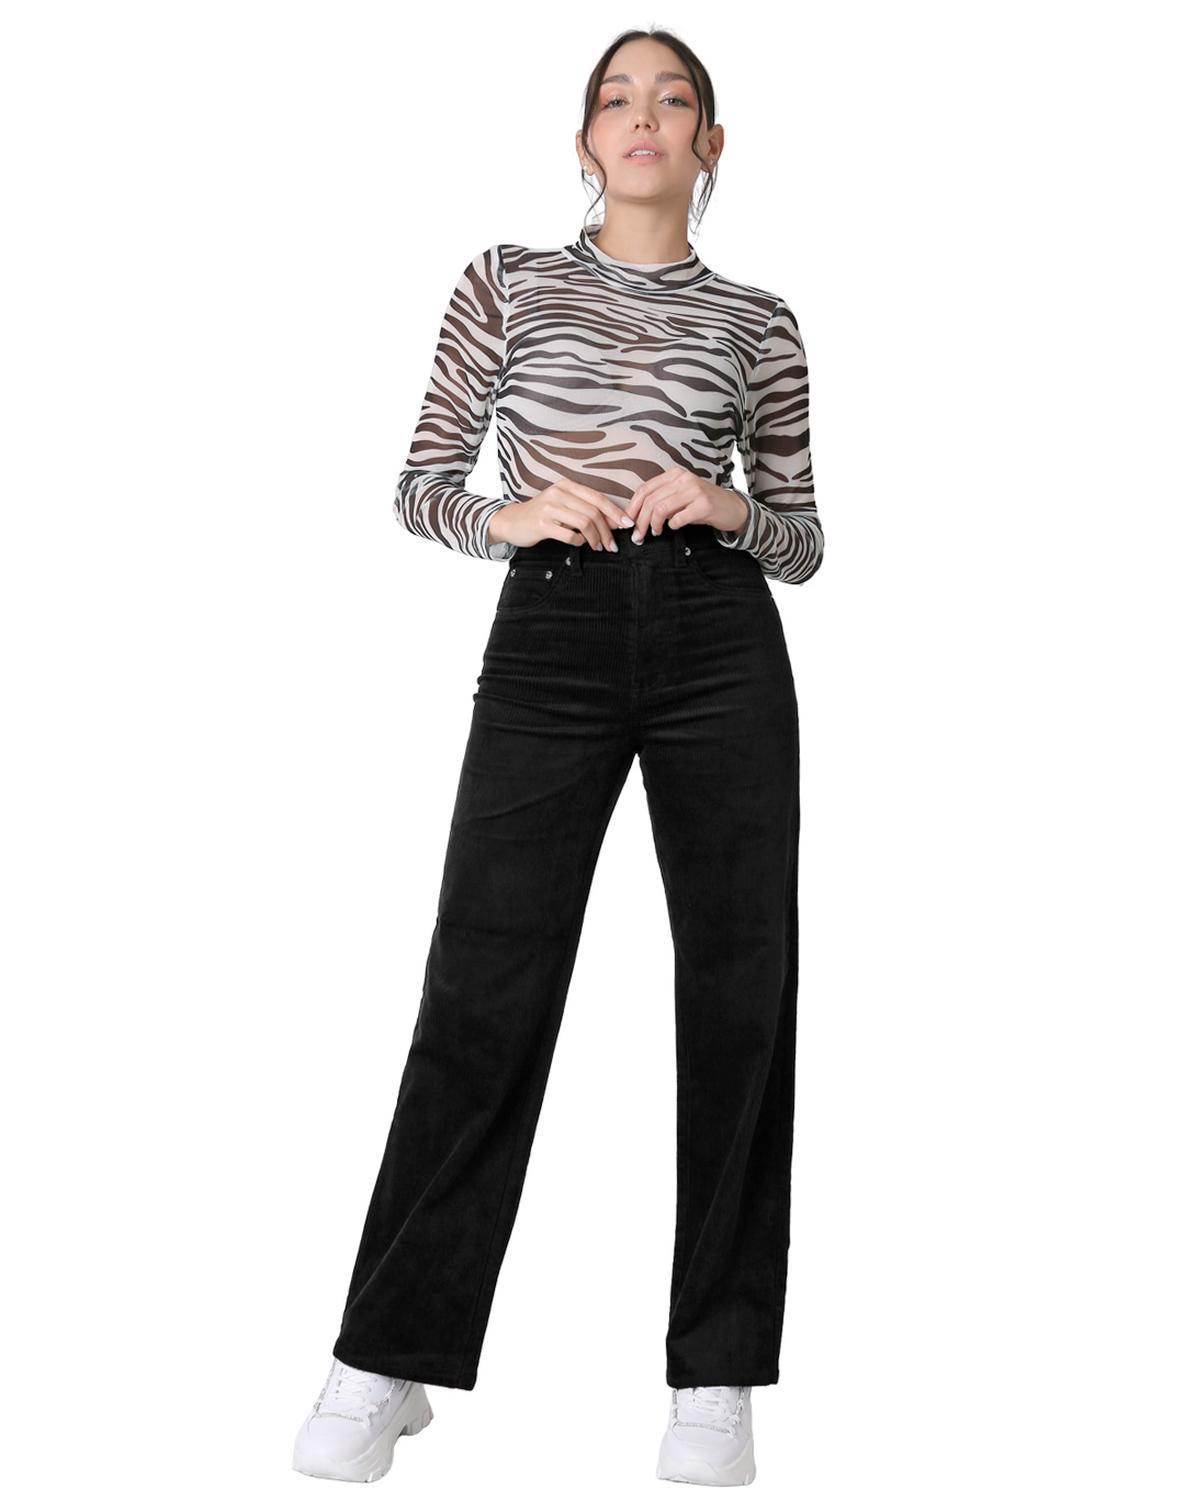 Pantalón formal recto ajustado tela milenium, Moda de Mujer